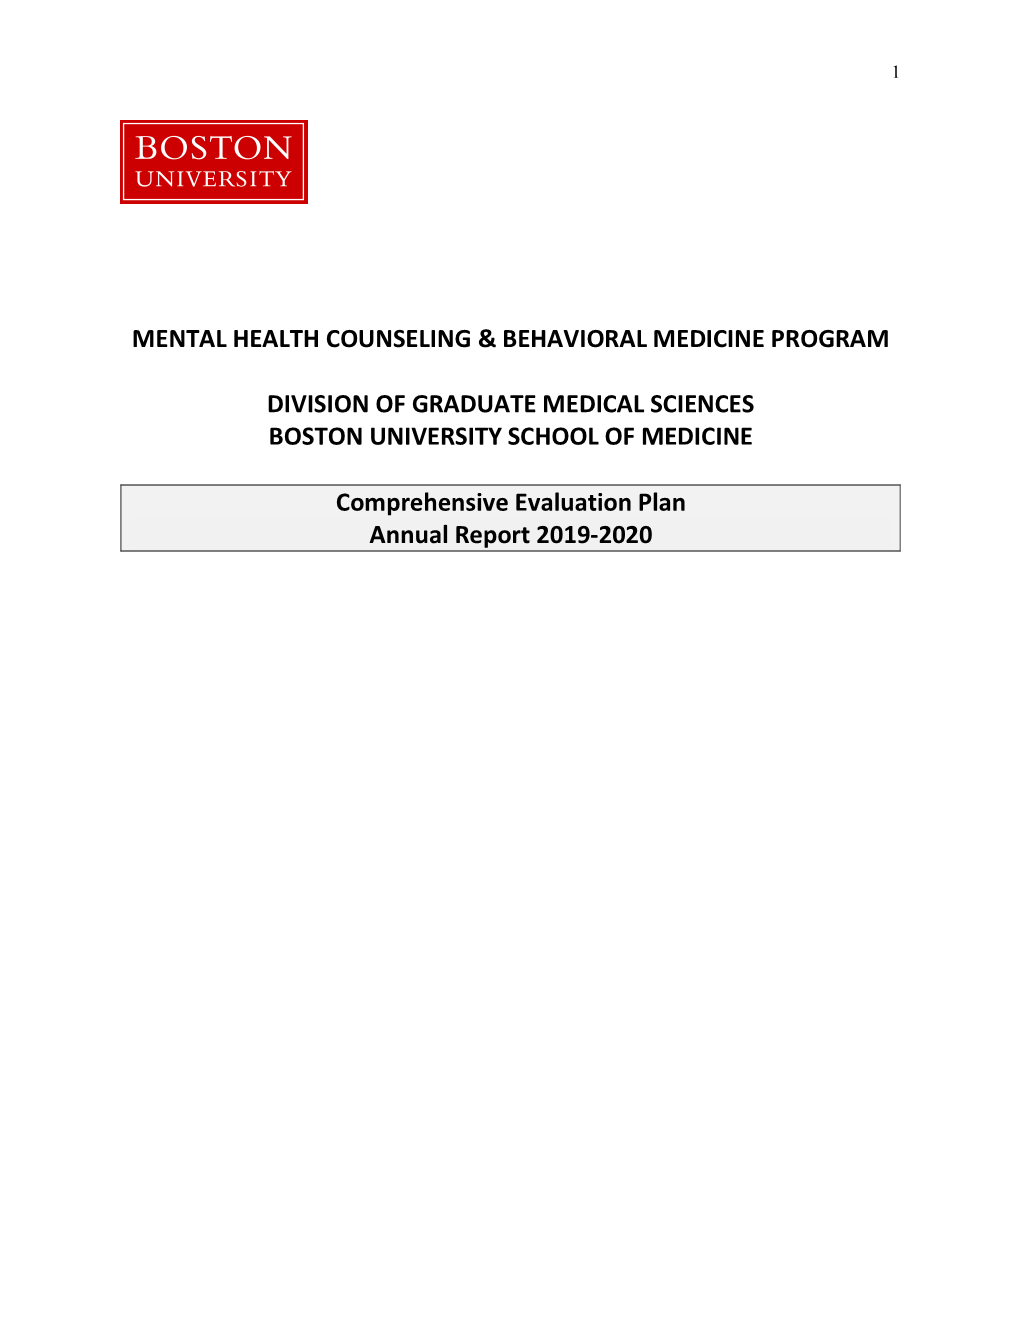 MHCBM Program Annual Report 2020